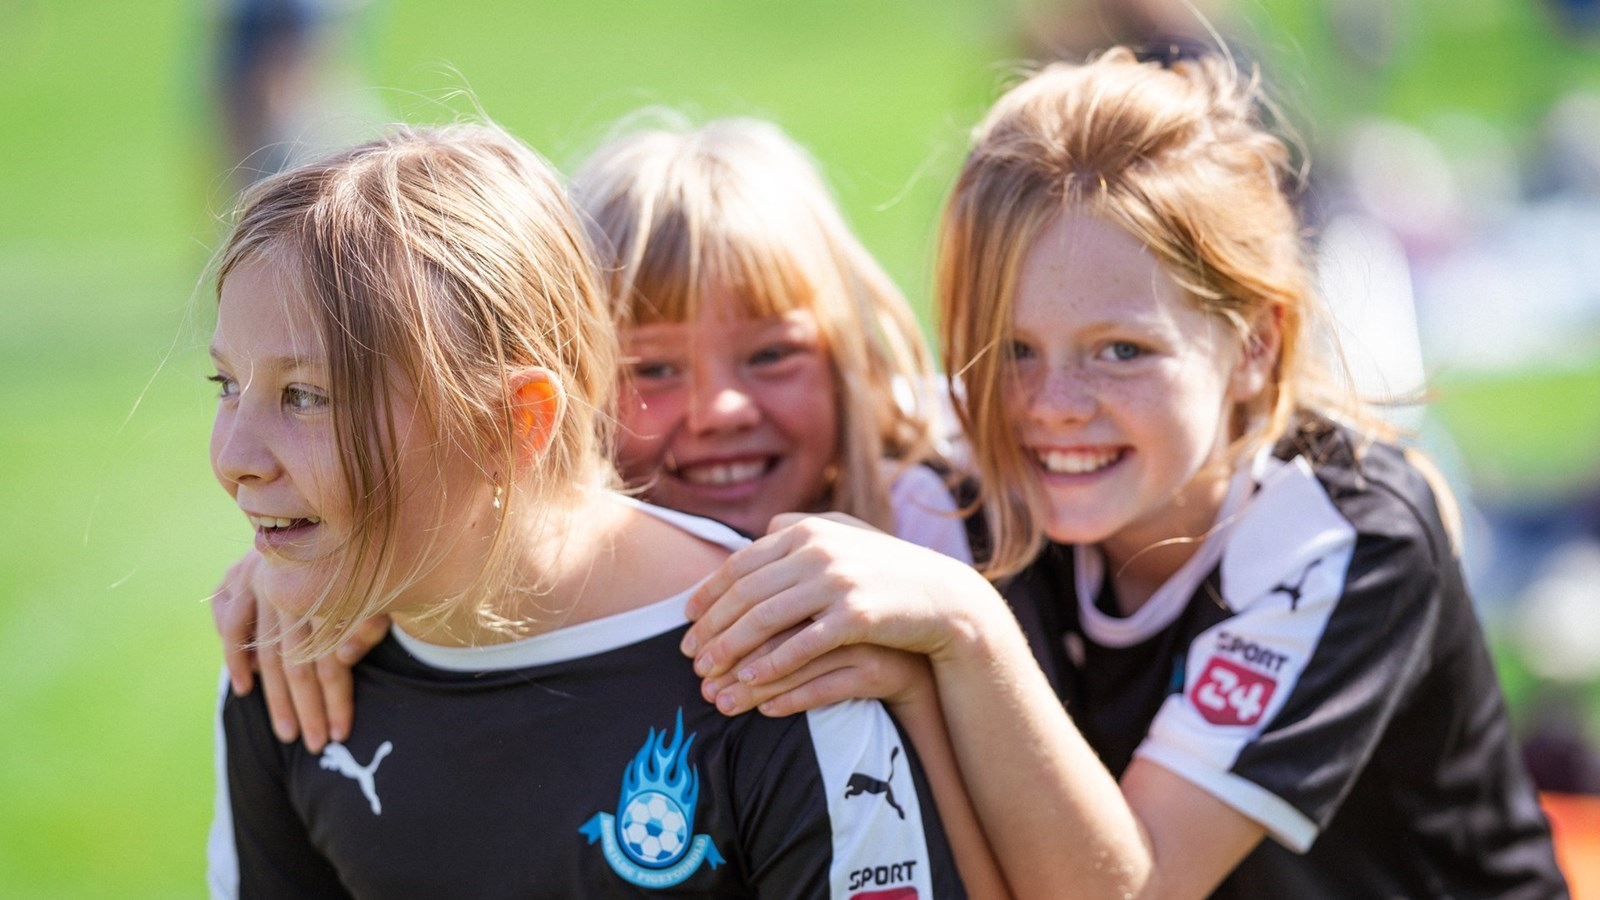 Sjællandsk fodbold skal være for alle, året rundt og hele livet